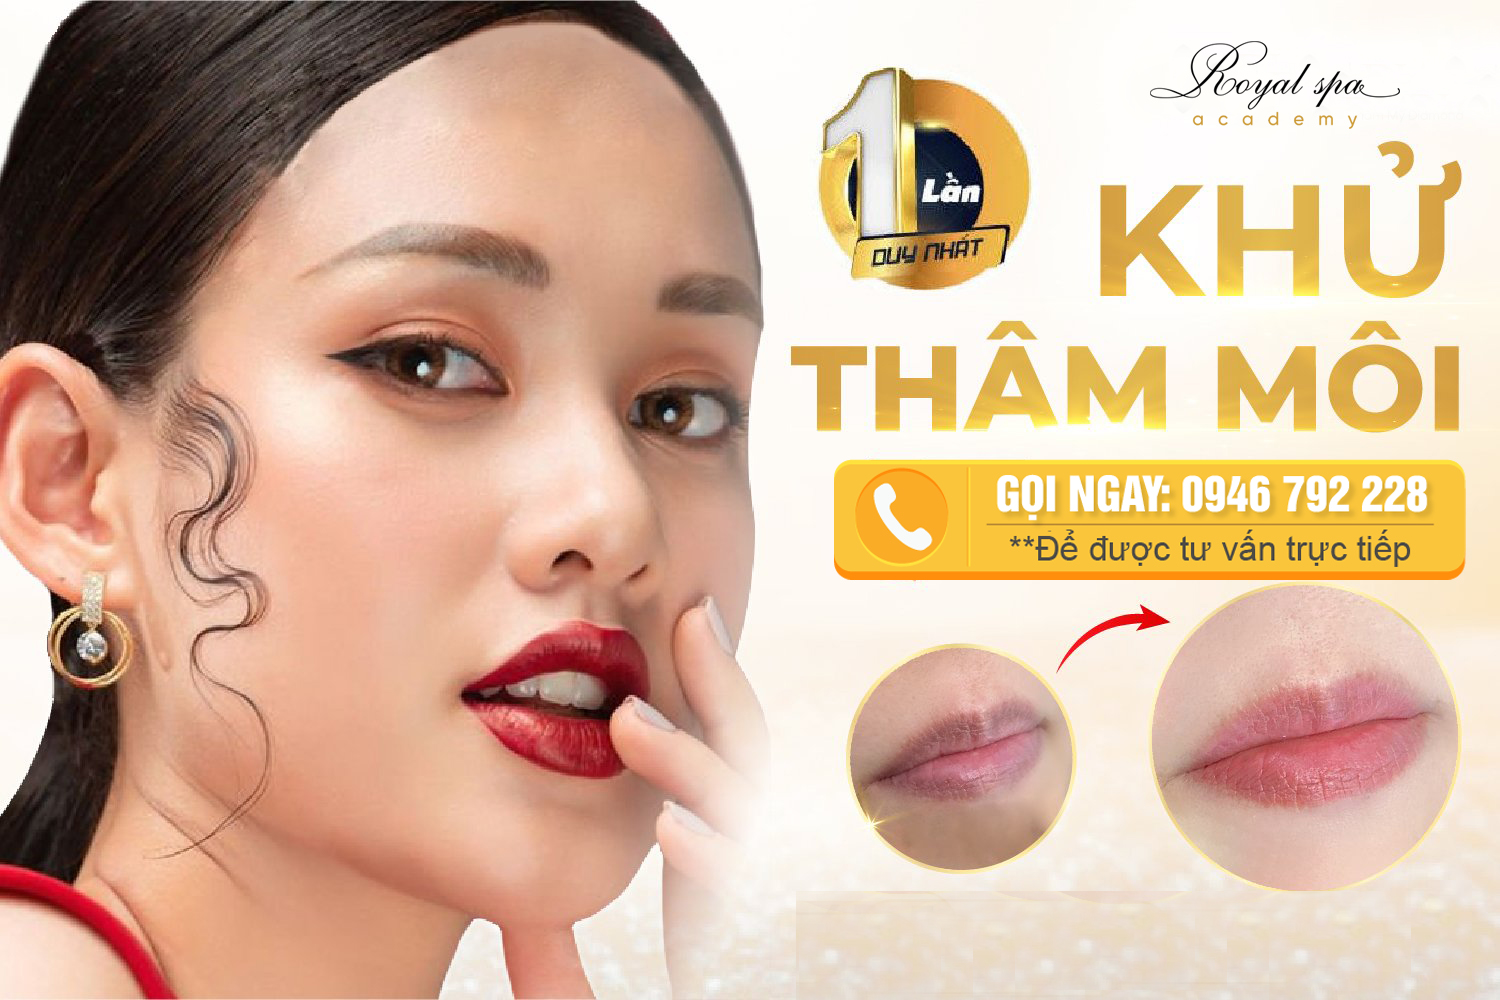 Khử thâm môi tại Nam Định của Royal Spa 